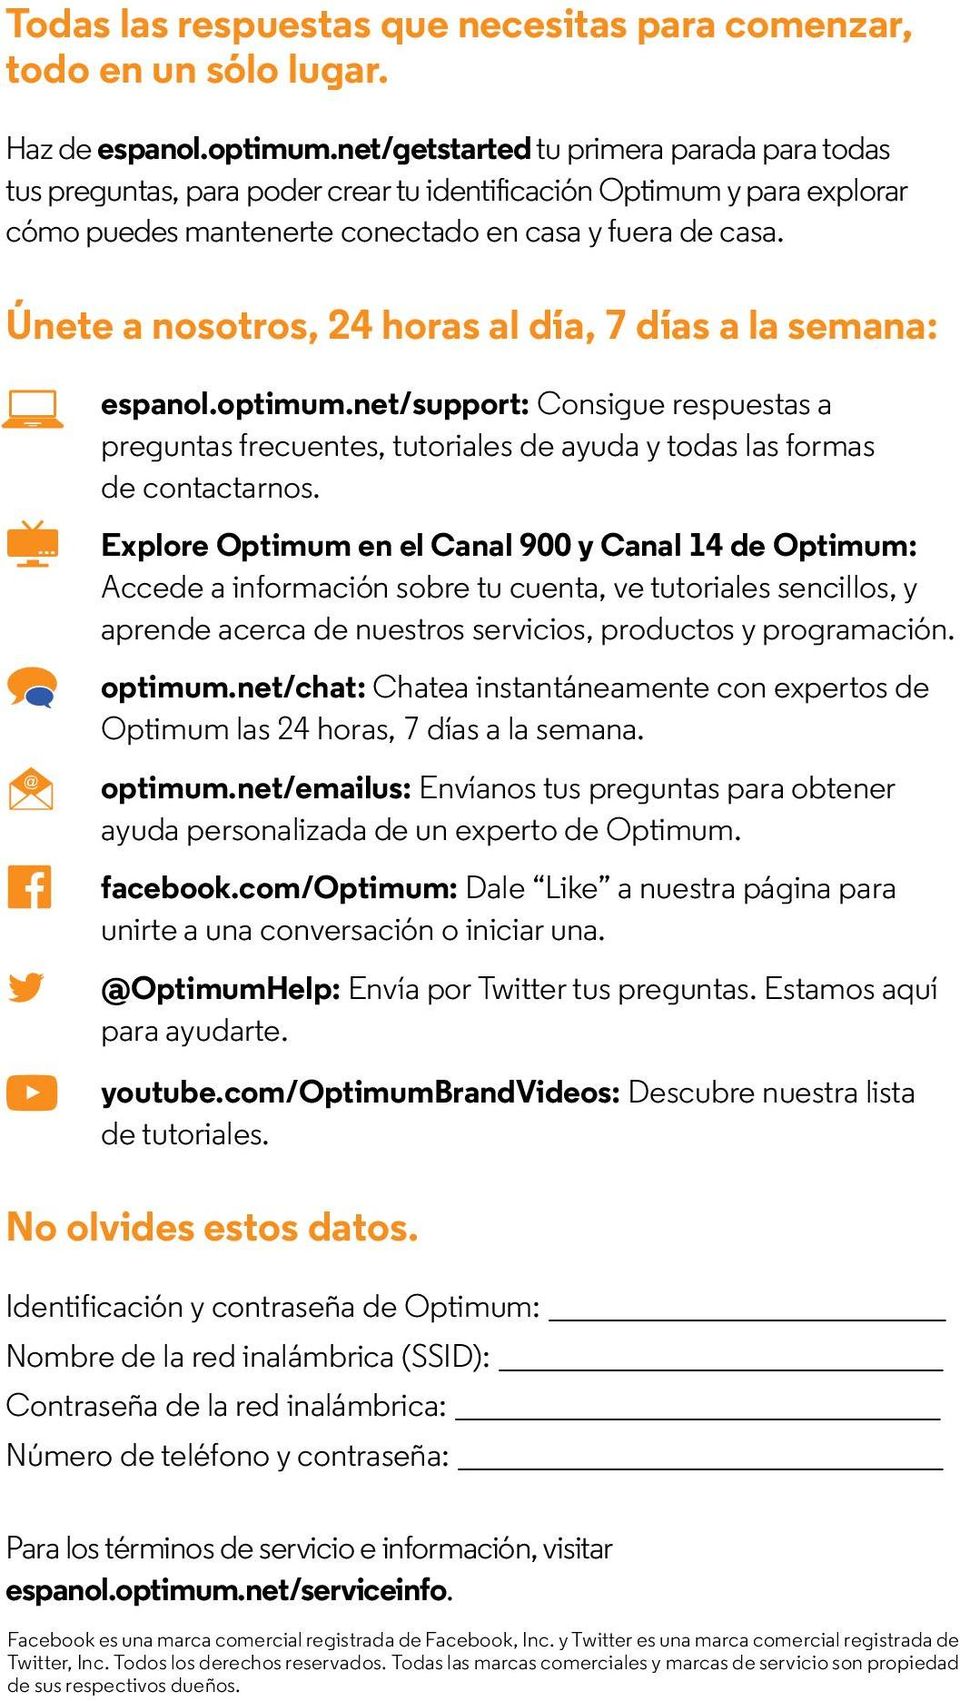 Únete a nosotros, 24 horas al día, 7 días a la semana: espanol.optimum.net/support: Consigue respuestas a preguntas frecuentes, tutoriales de ayuda y todas las formas de contactarnos.